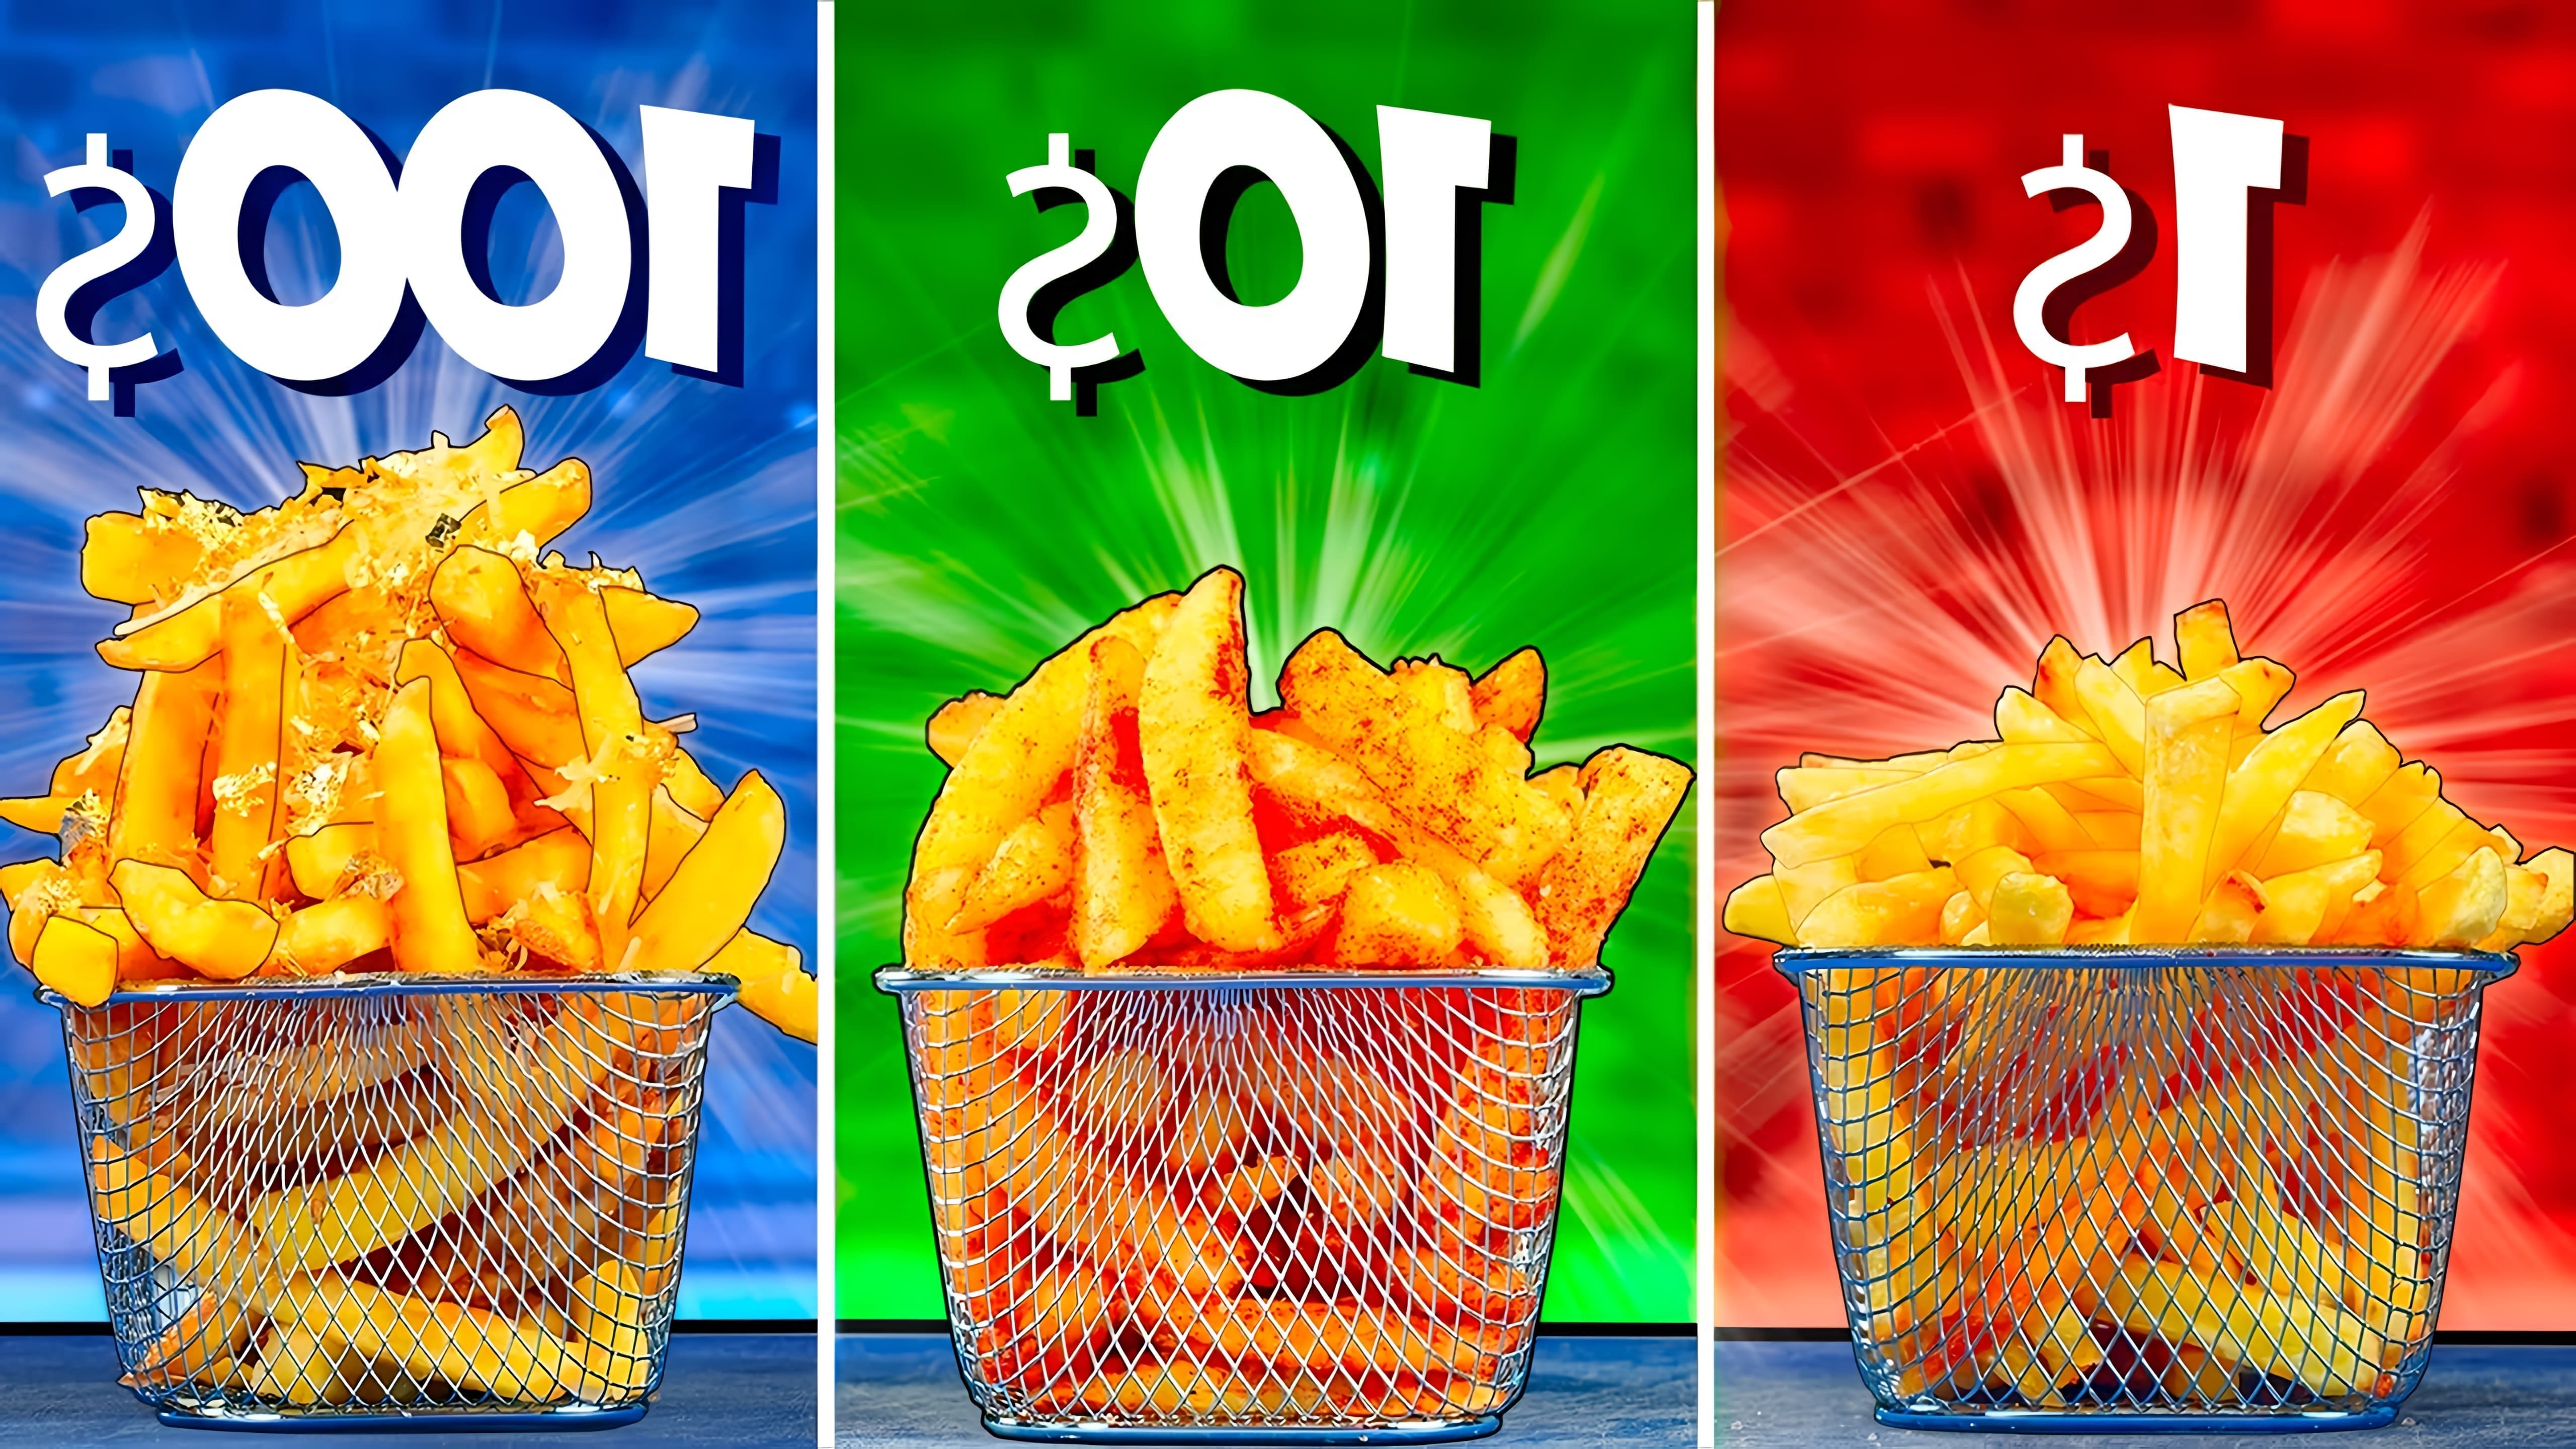 Видео сравнивает картофельные фри из наборов ингредиентов стоимостью $1, $10 и $100 соответственно